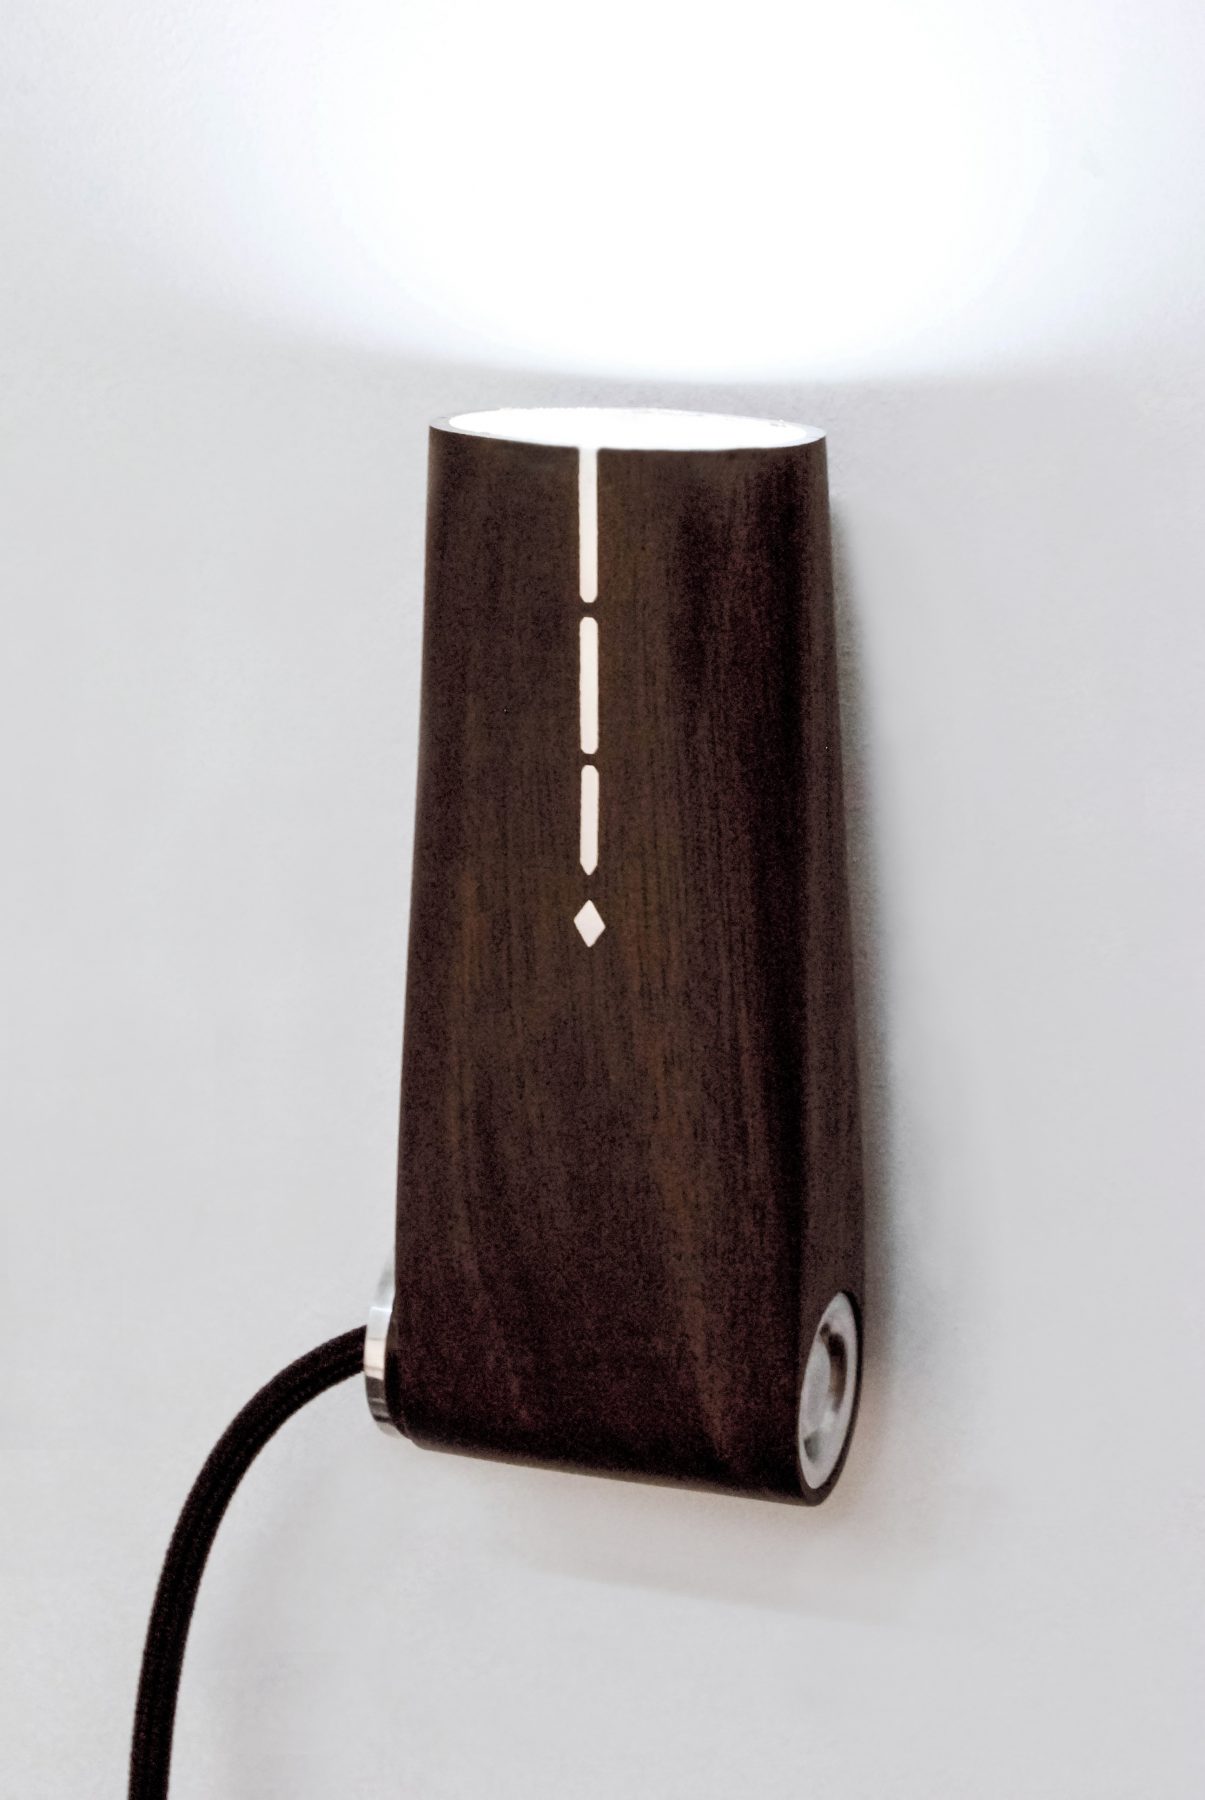 F.Light - client : Verney-Carron - design by bold-design - www.bold-design.fr